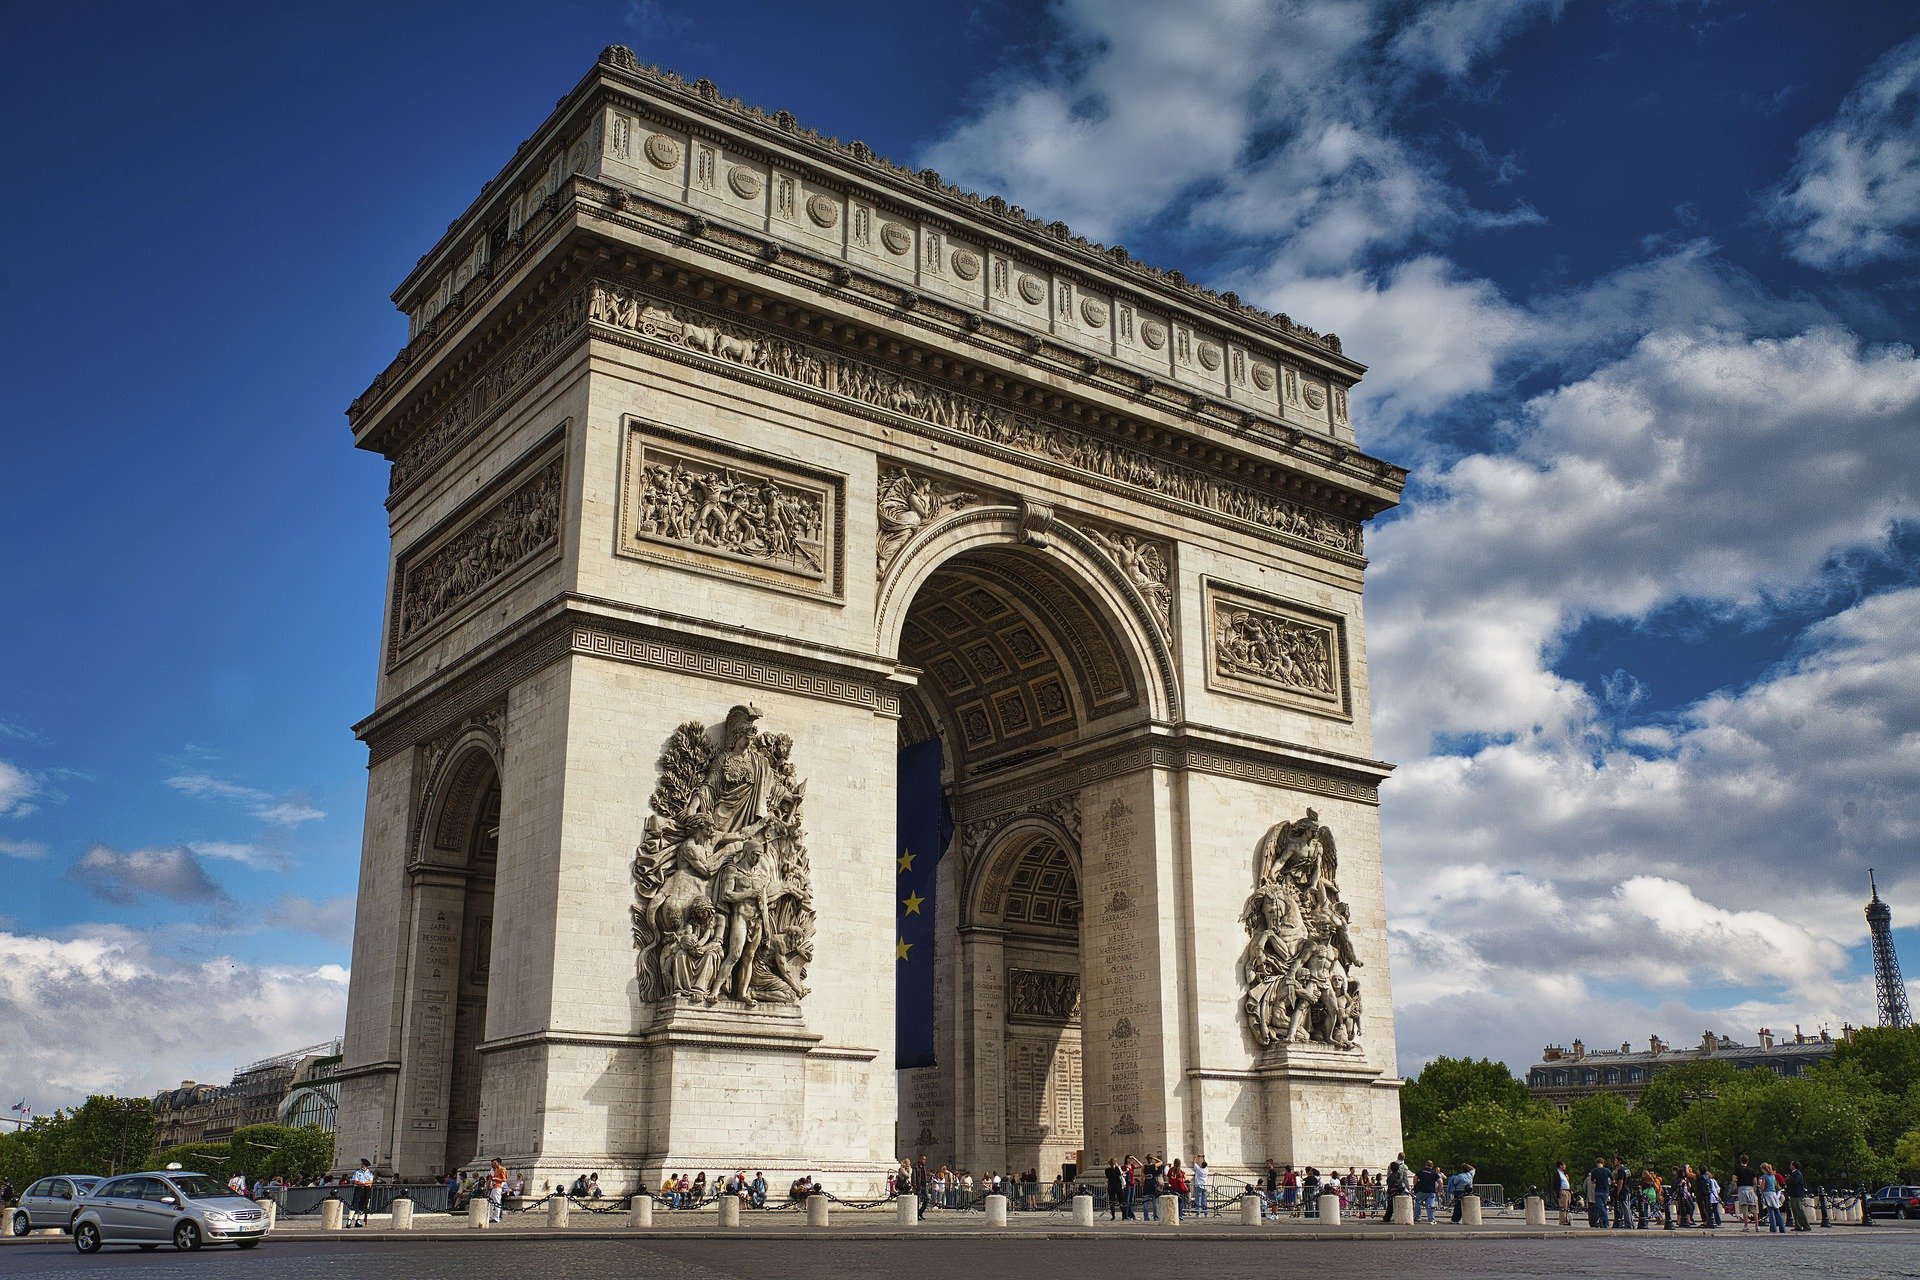 The Champs-Élysées and the Arc de Triomphe, Arc de Triomphe Paris, Tourism information and hotels nearby